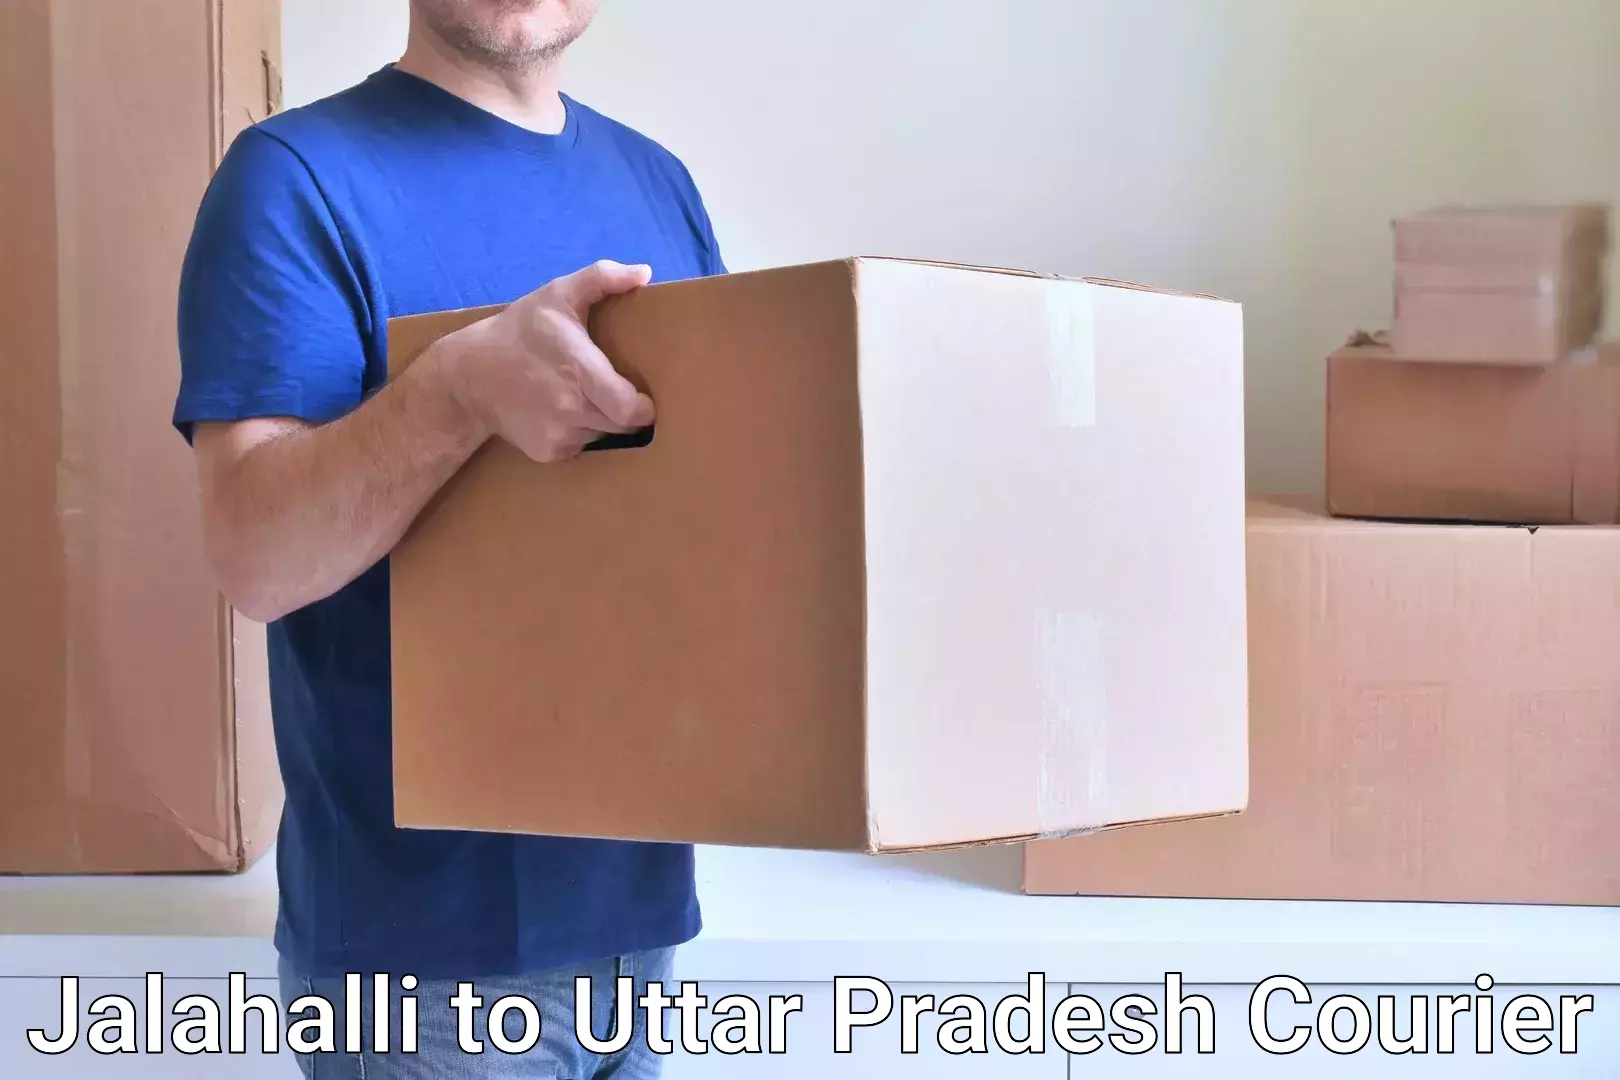 Modern courier technology Jalahalli to Kishni